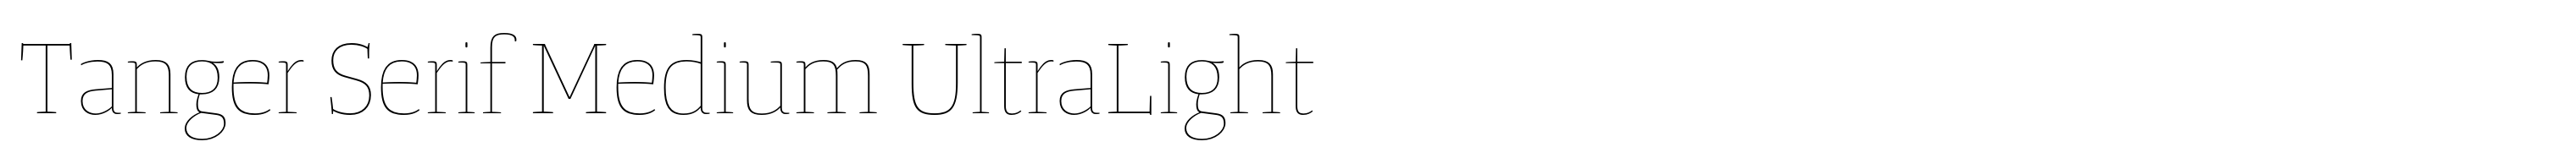 Tanger Serif Medium UltraLight